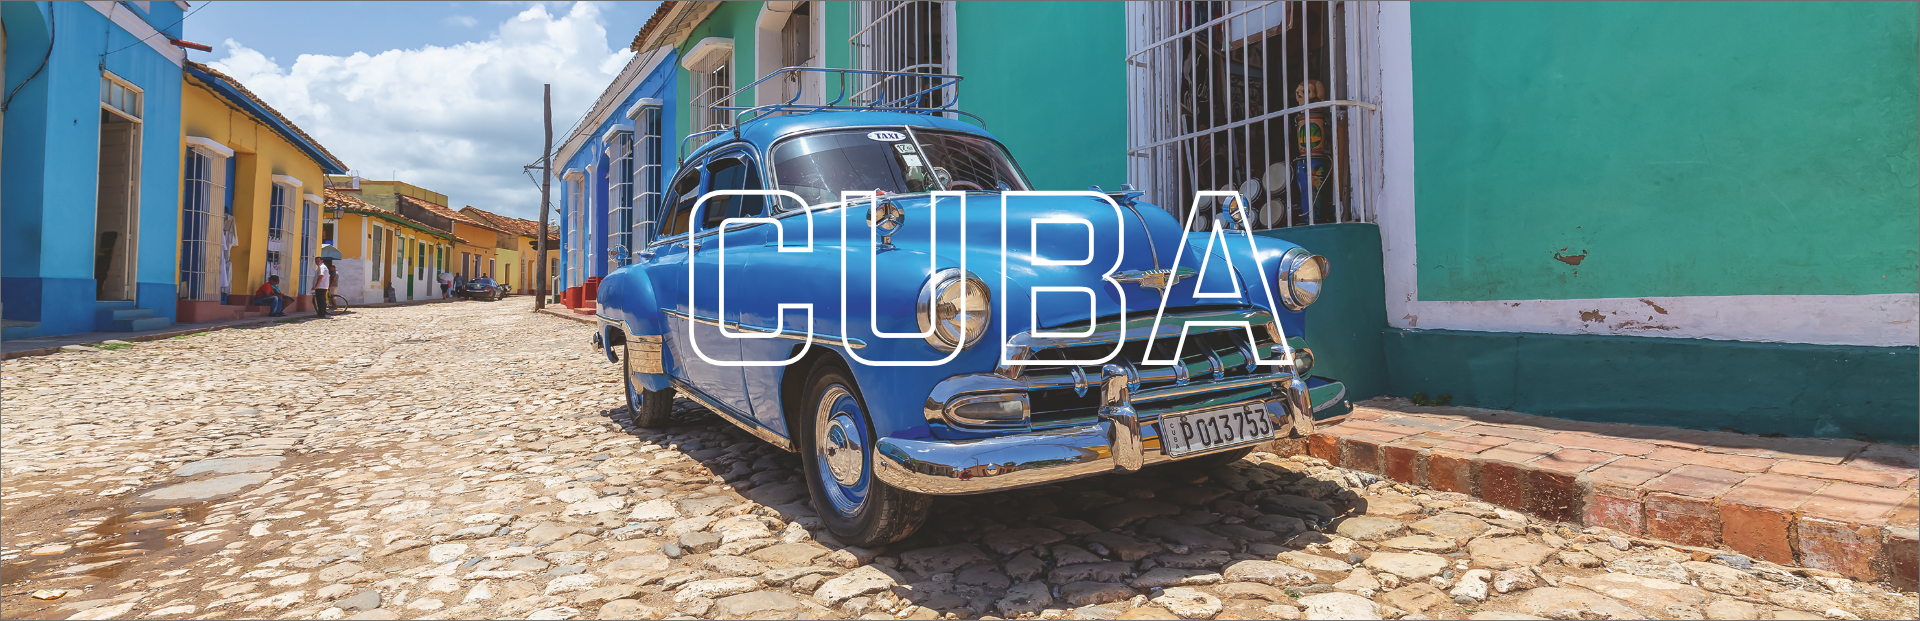 header-Cuba.png